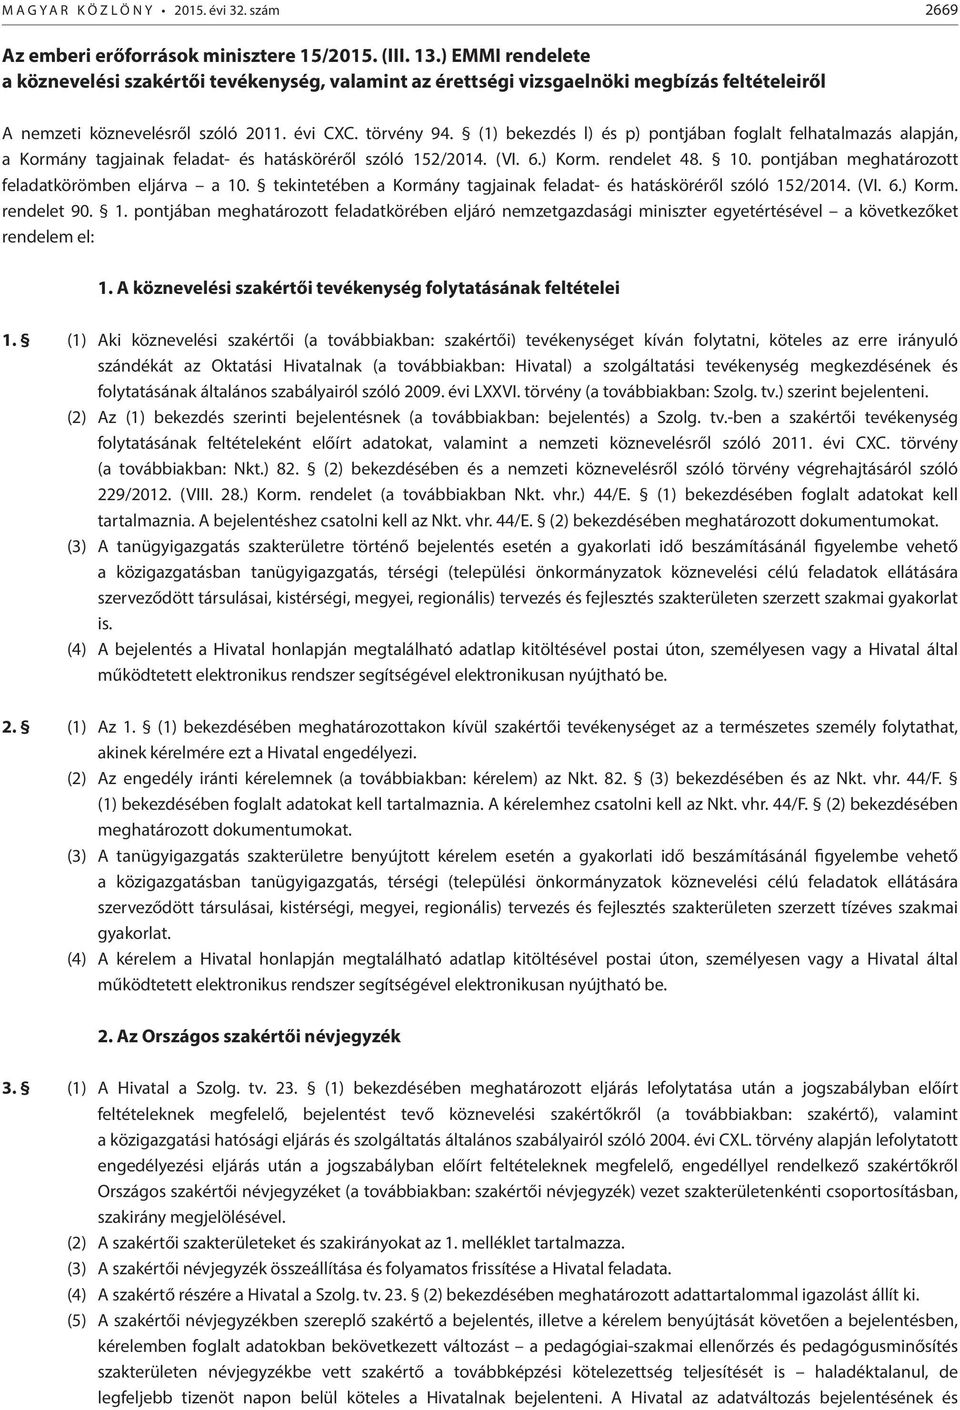 (1) bekezdés l) és p) pontjában foglalt felhatalmazás alapján, a Kormány tagjainak feladat- és hatásköréről szóló 152/2014. (VI. 6.) Korm. rendelet 48. 10.